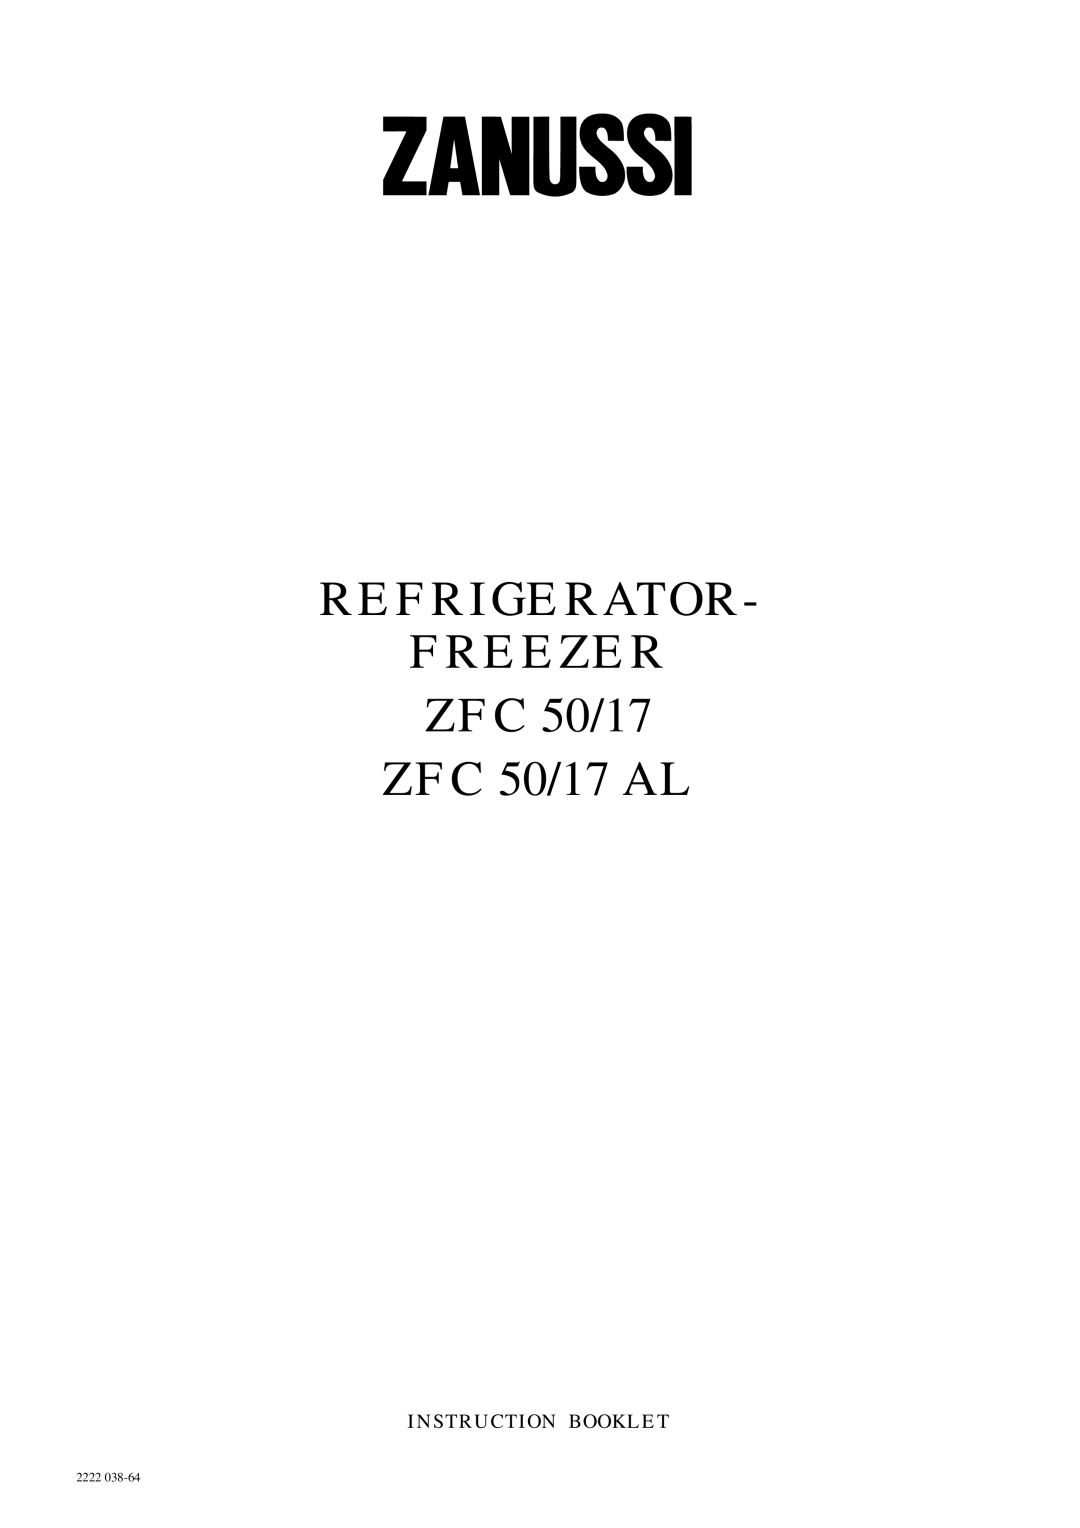 Zanussi manual REFRIGERATOR FREEZER ZFC 50/17 ZFC 50/17 AL, Instruction Booklet, 2222 